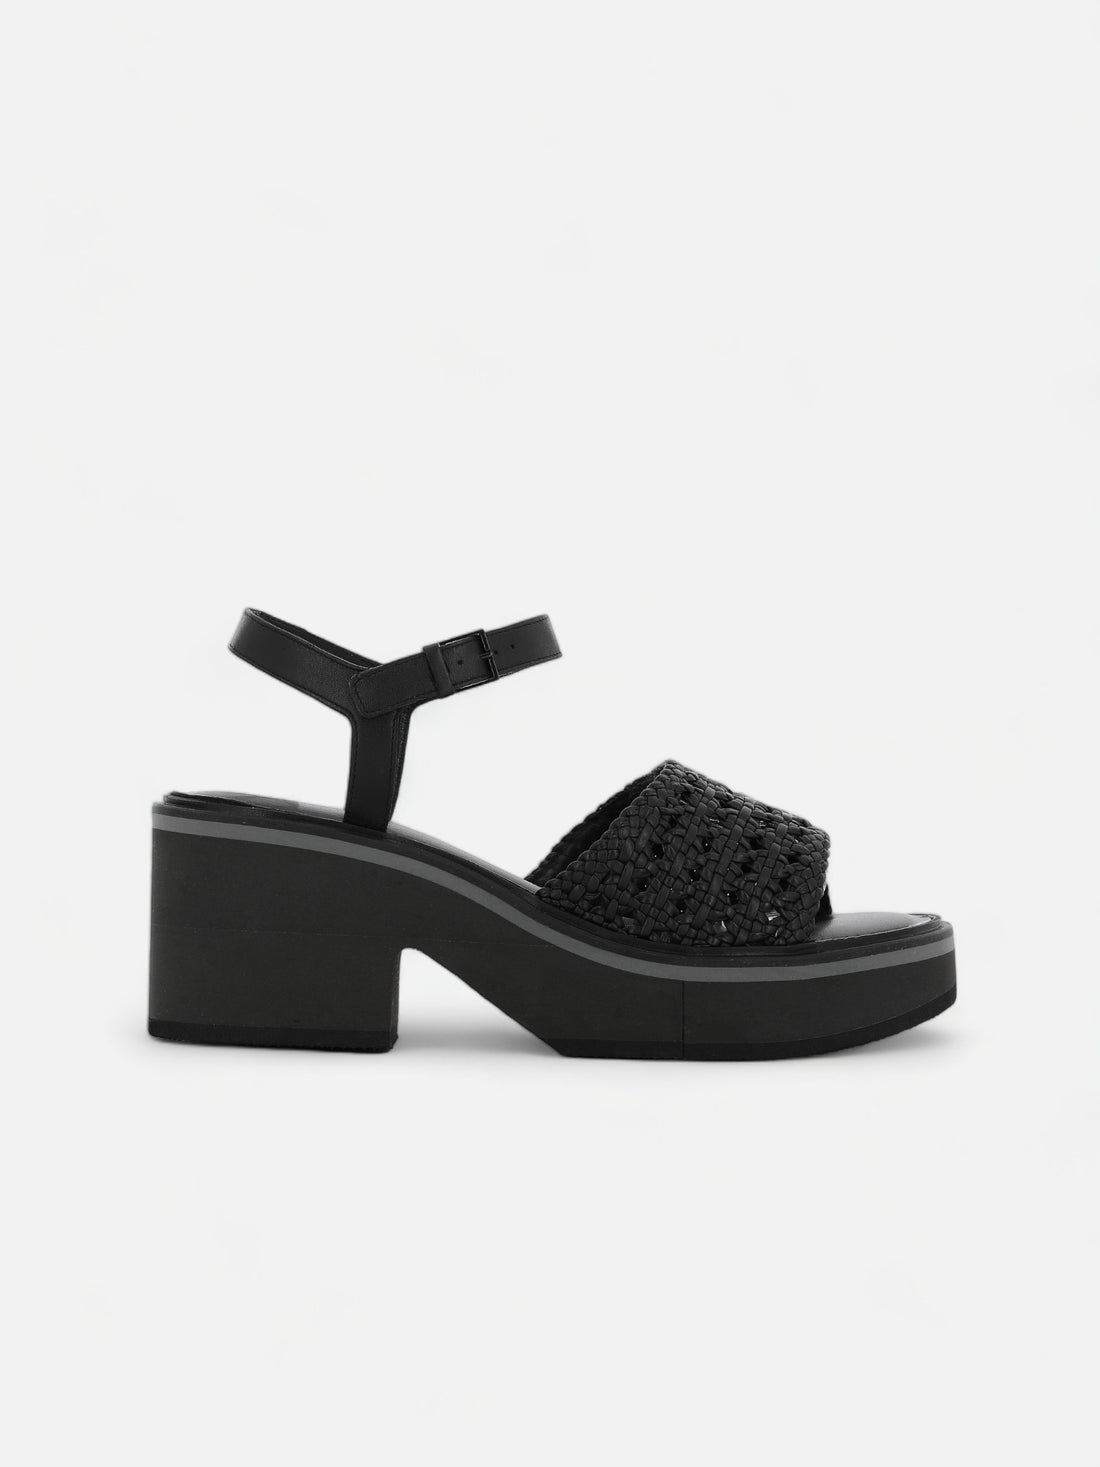 CELITA sandals, black nappa || OUTLET